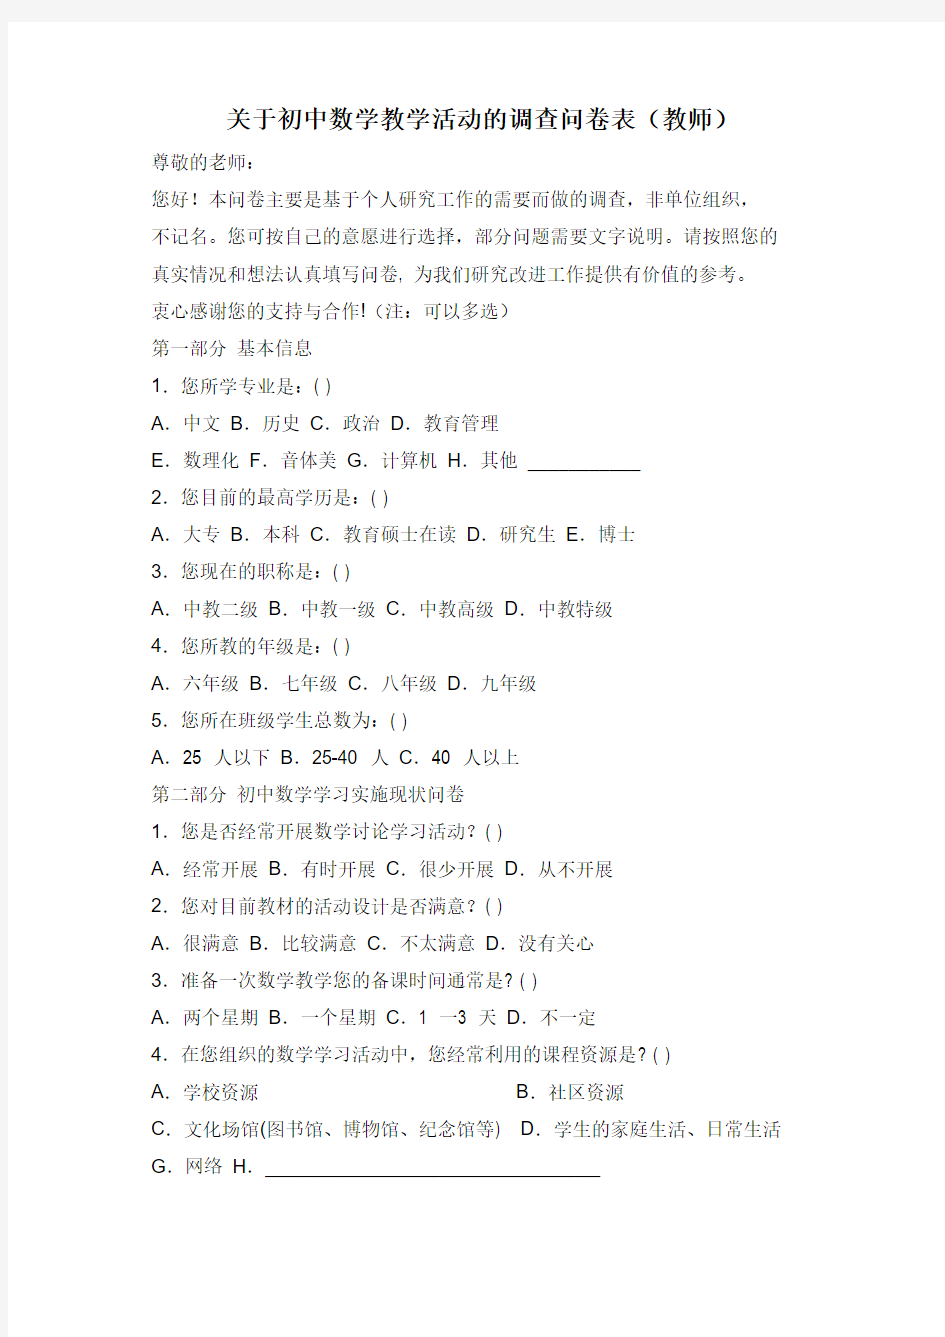 关于初中语文综合活动的调查问卷表